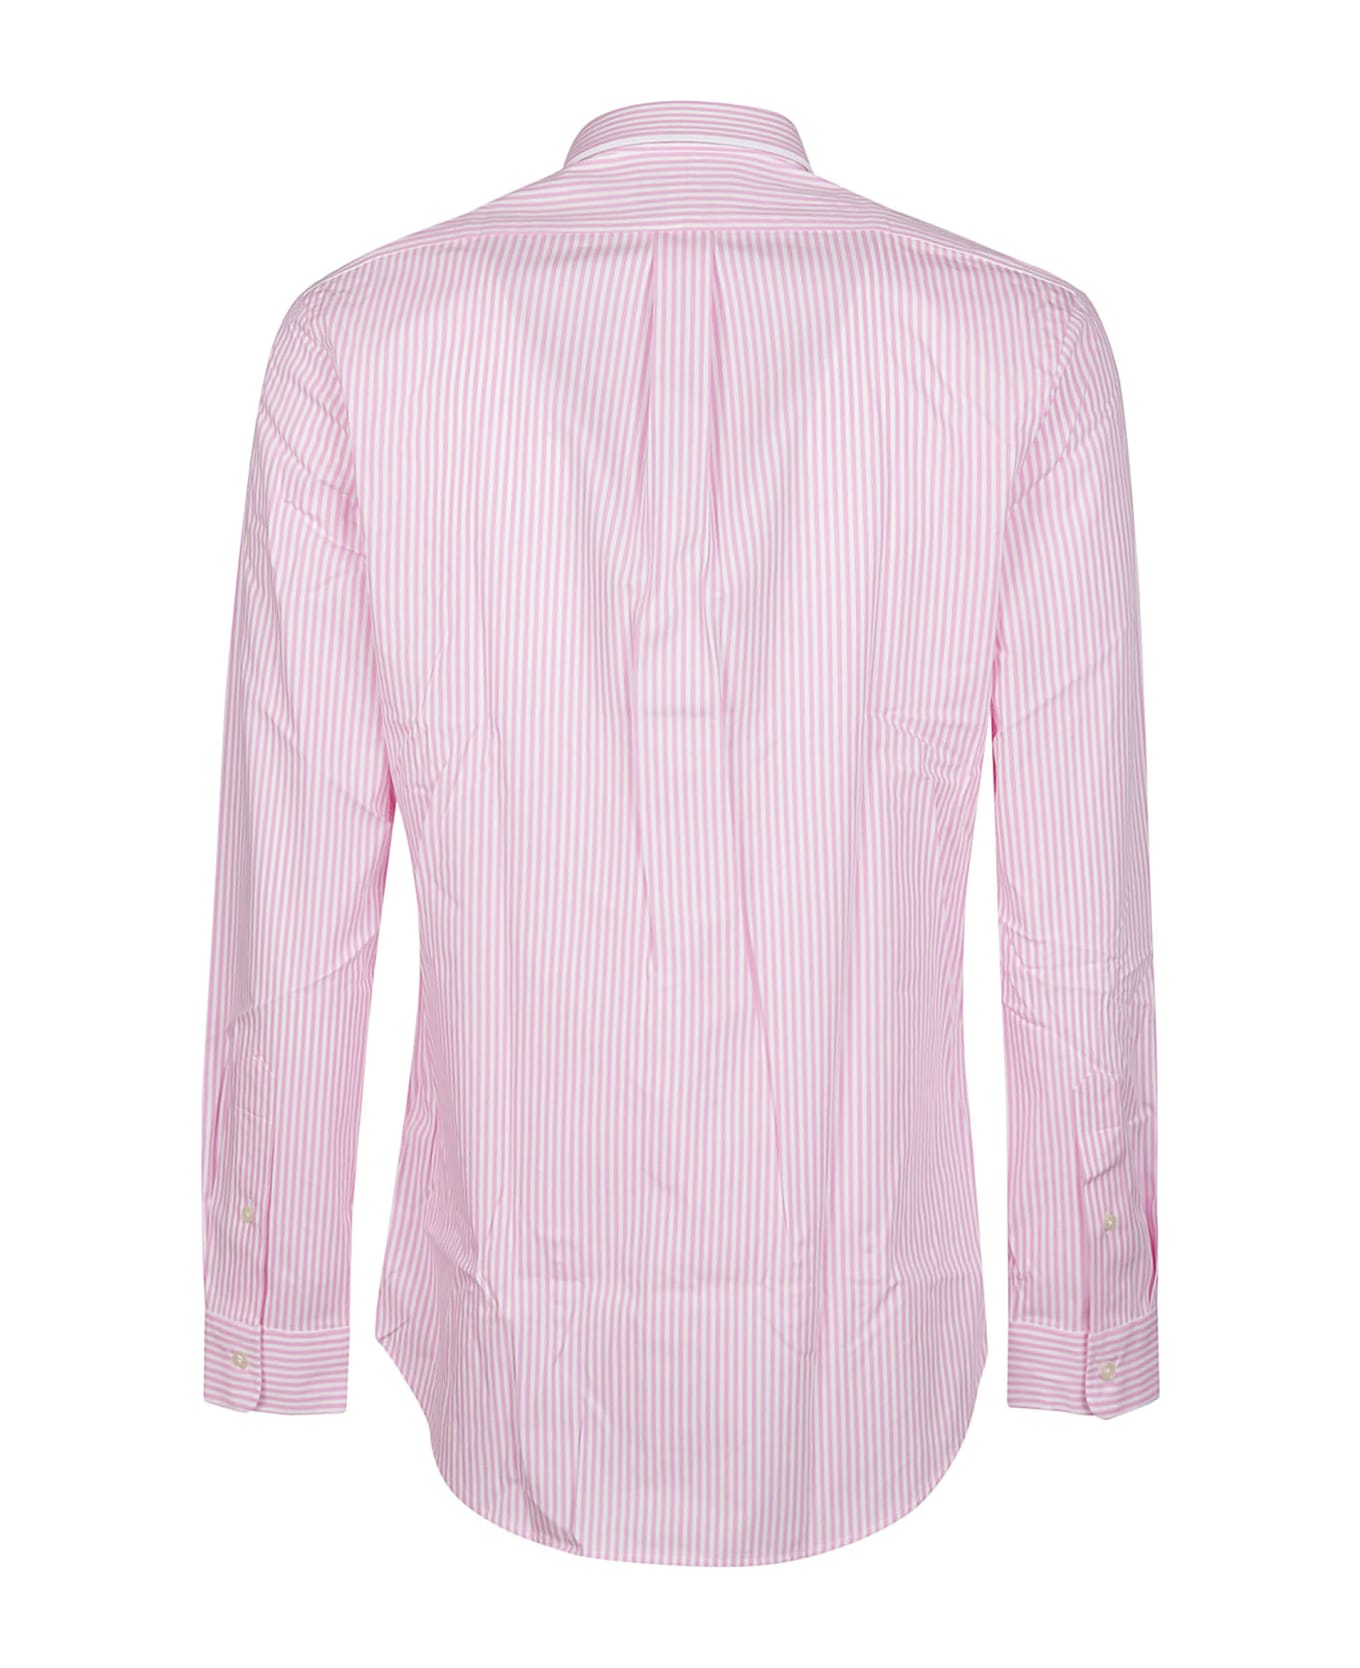 Polo Ralph Lauren Long Sleeve Sport Shirt - Pink/white